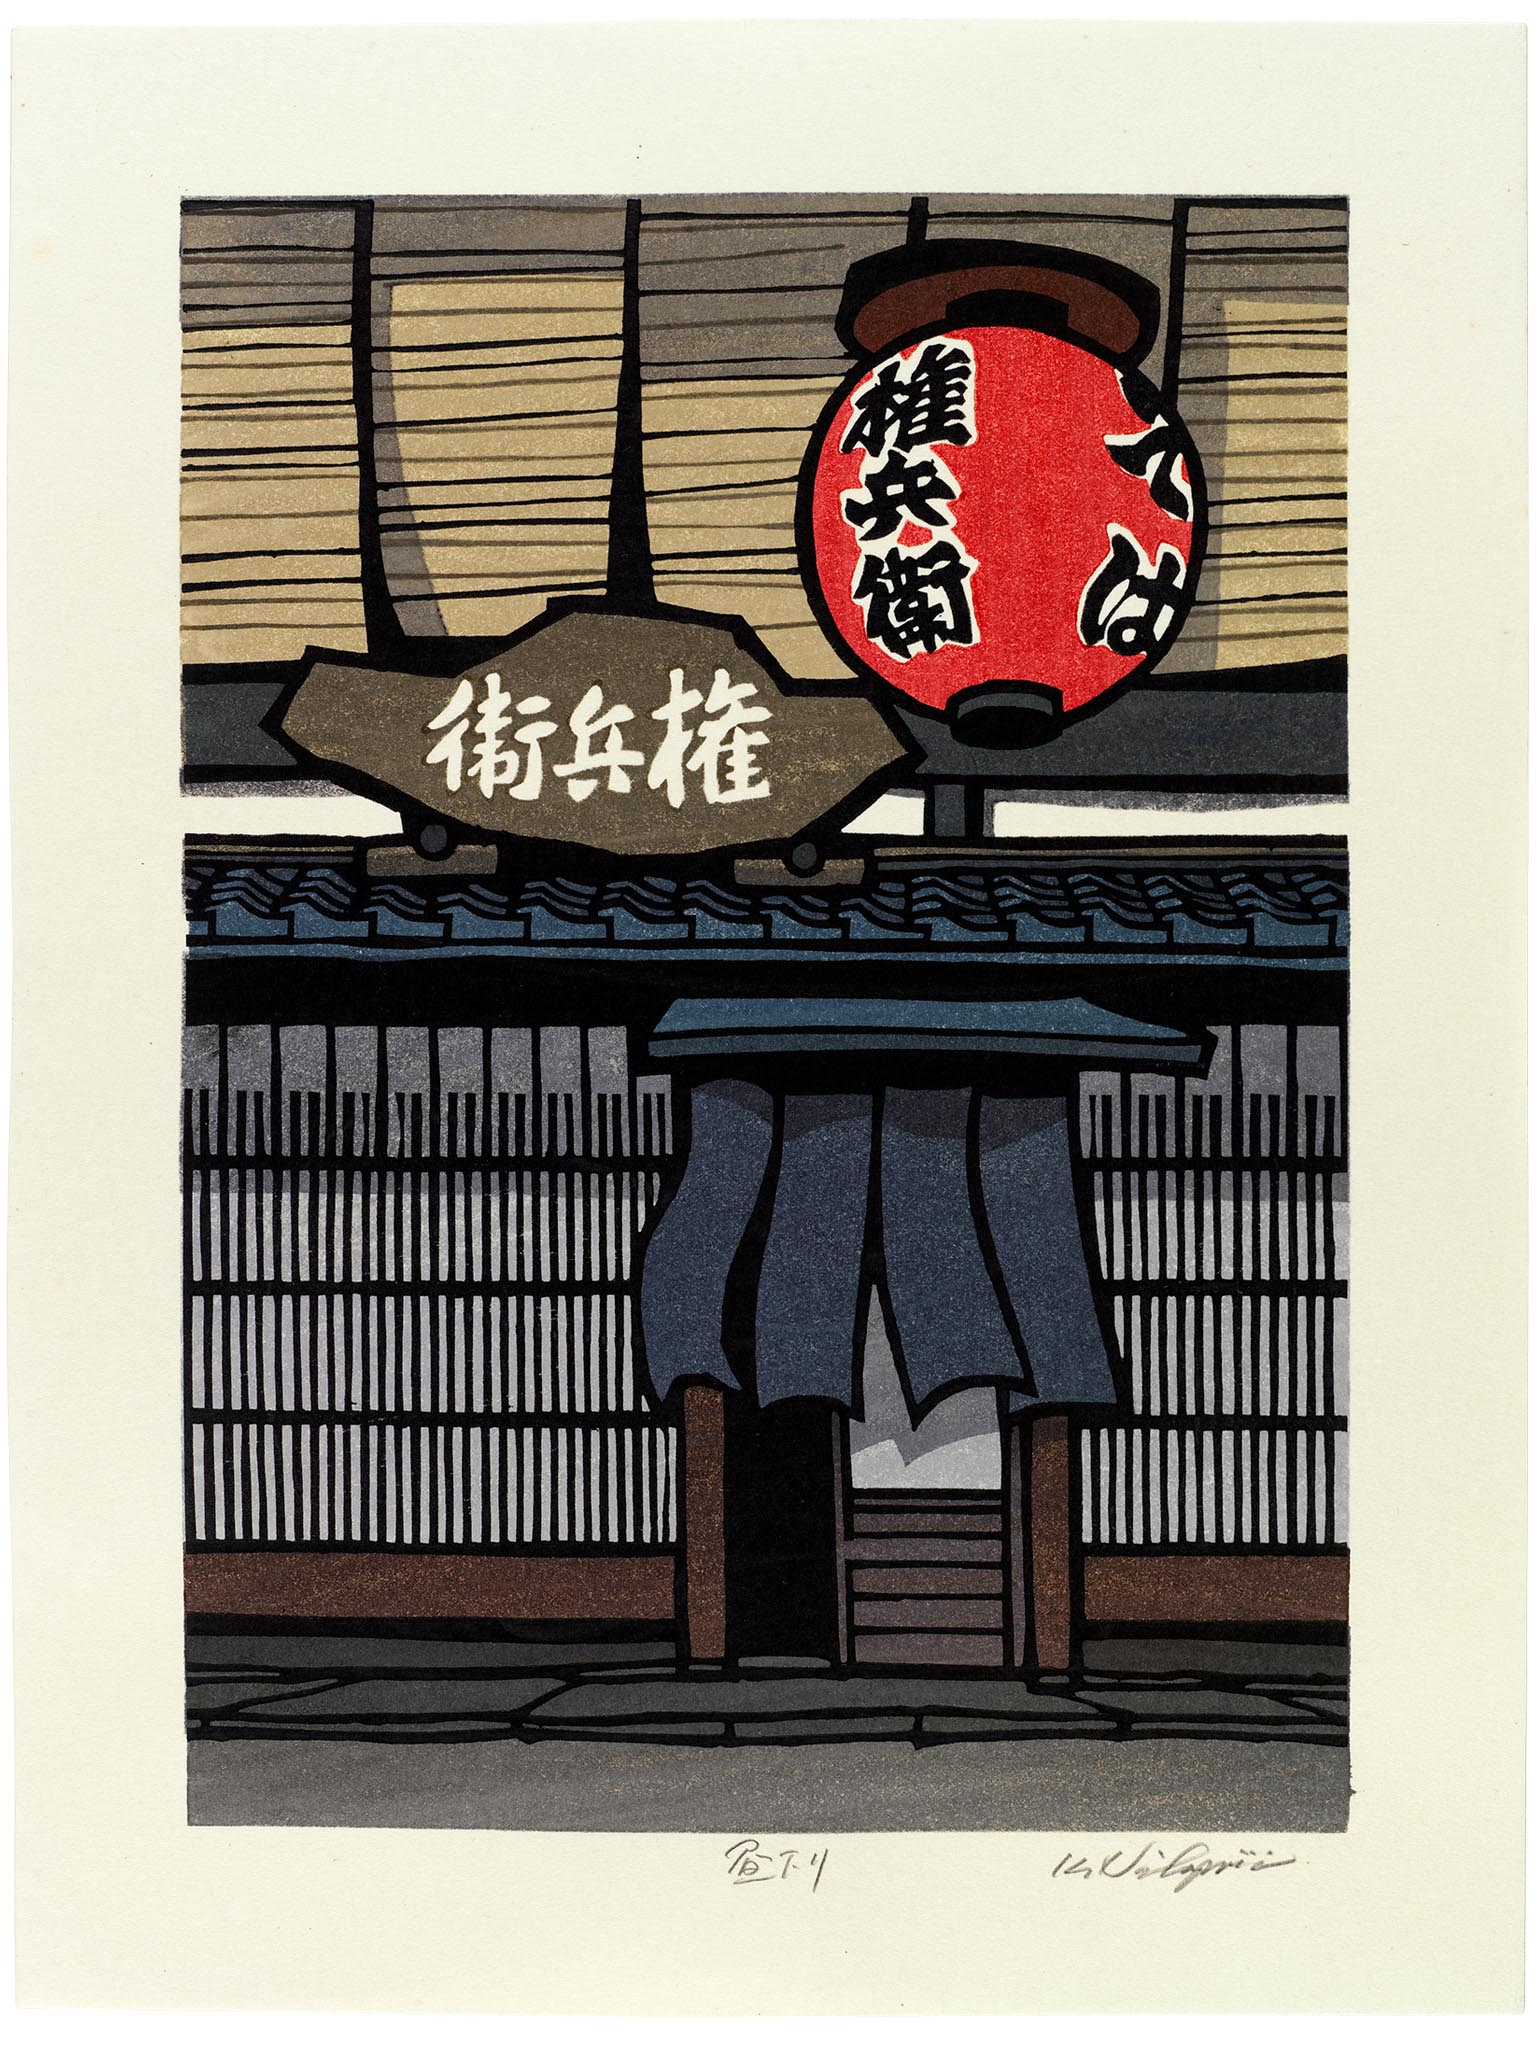 estampe japonaise contemporaine, entrée restaurant traditionnel kyoto, avec lanterne rouge, noren et enseigne